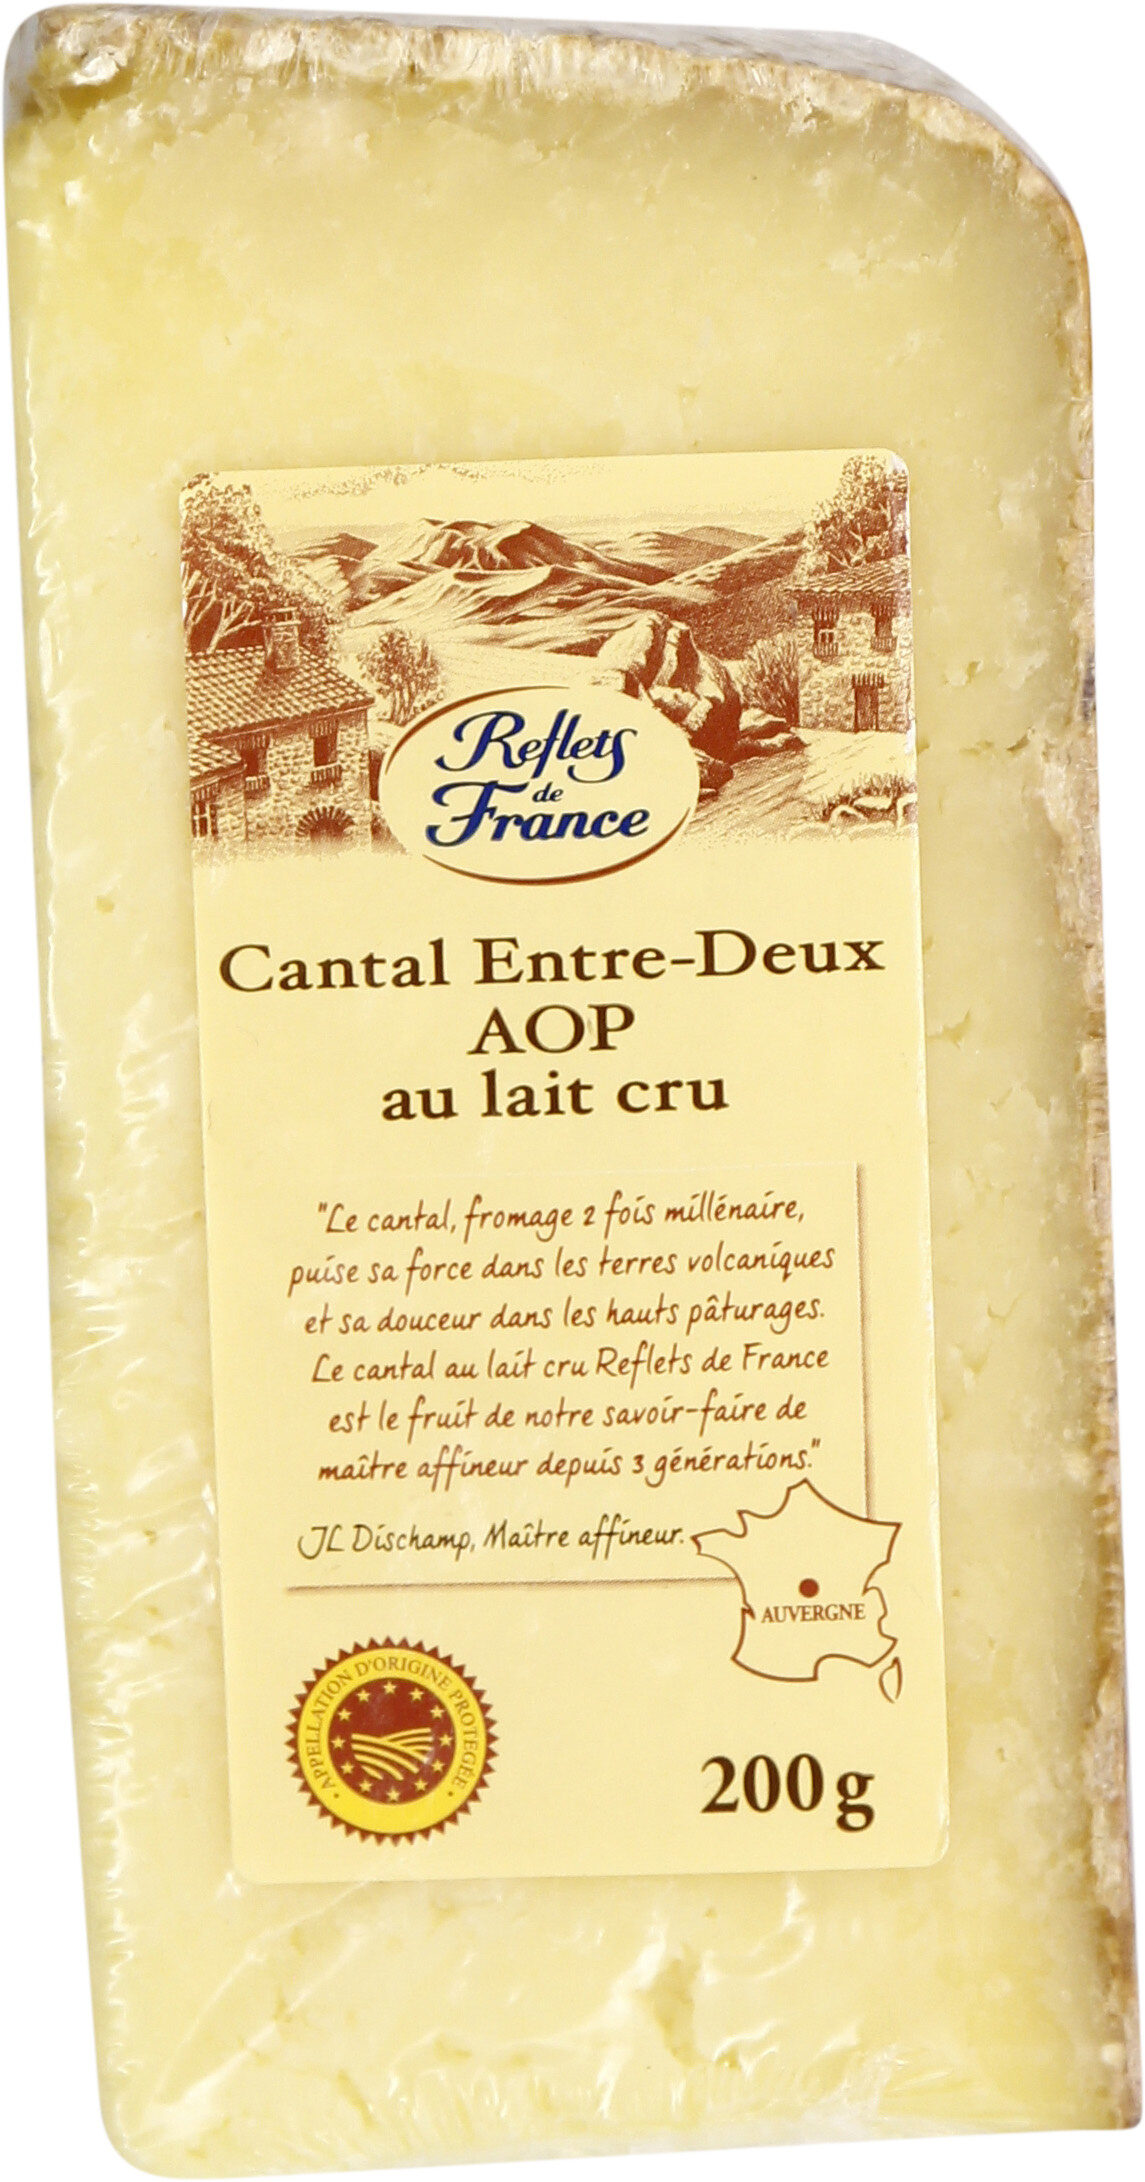 Cantal entre-deux AOP au lait cru - Product - fr